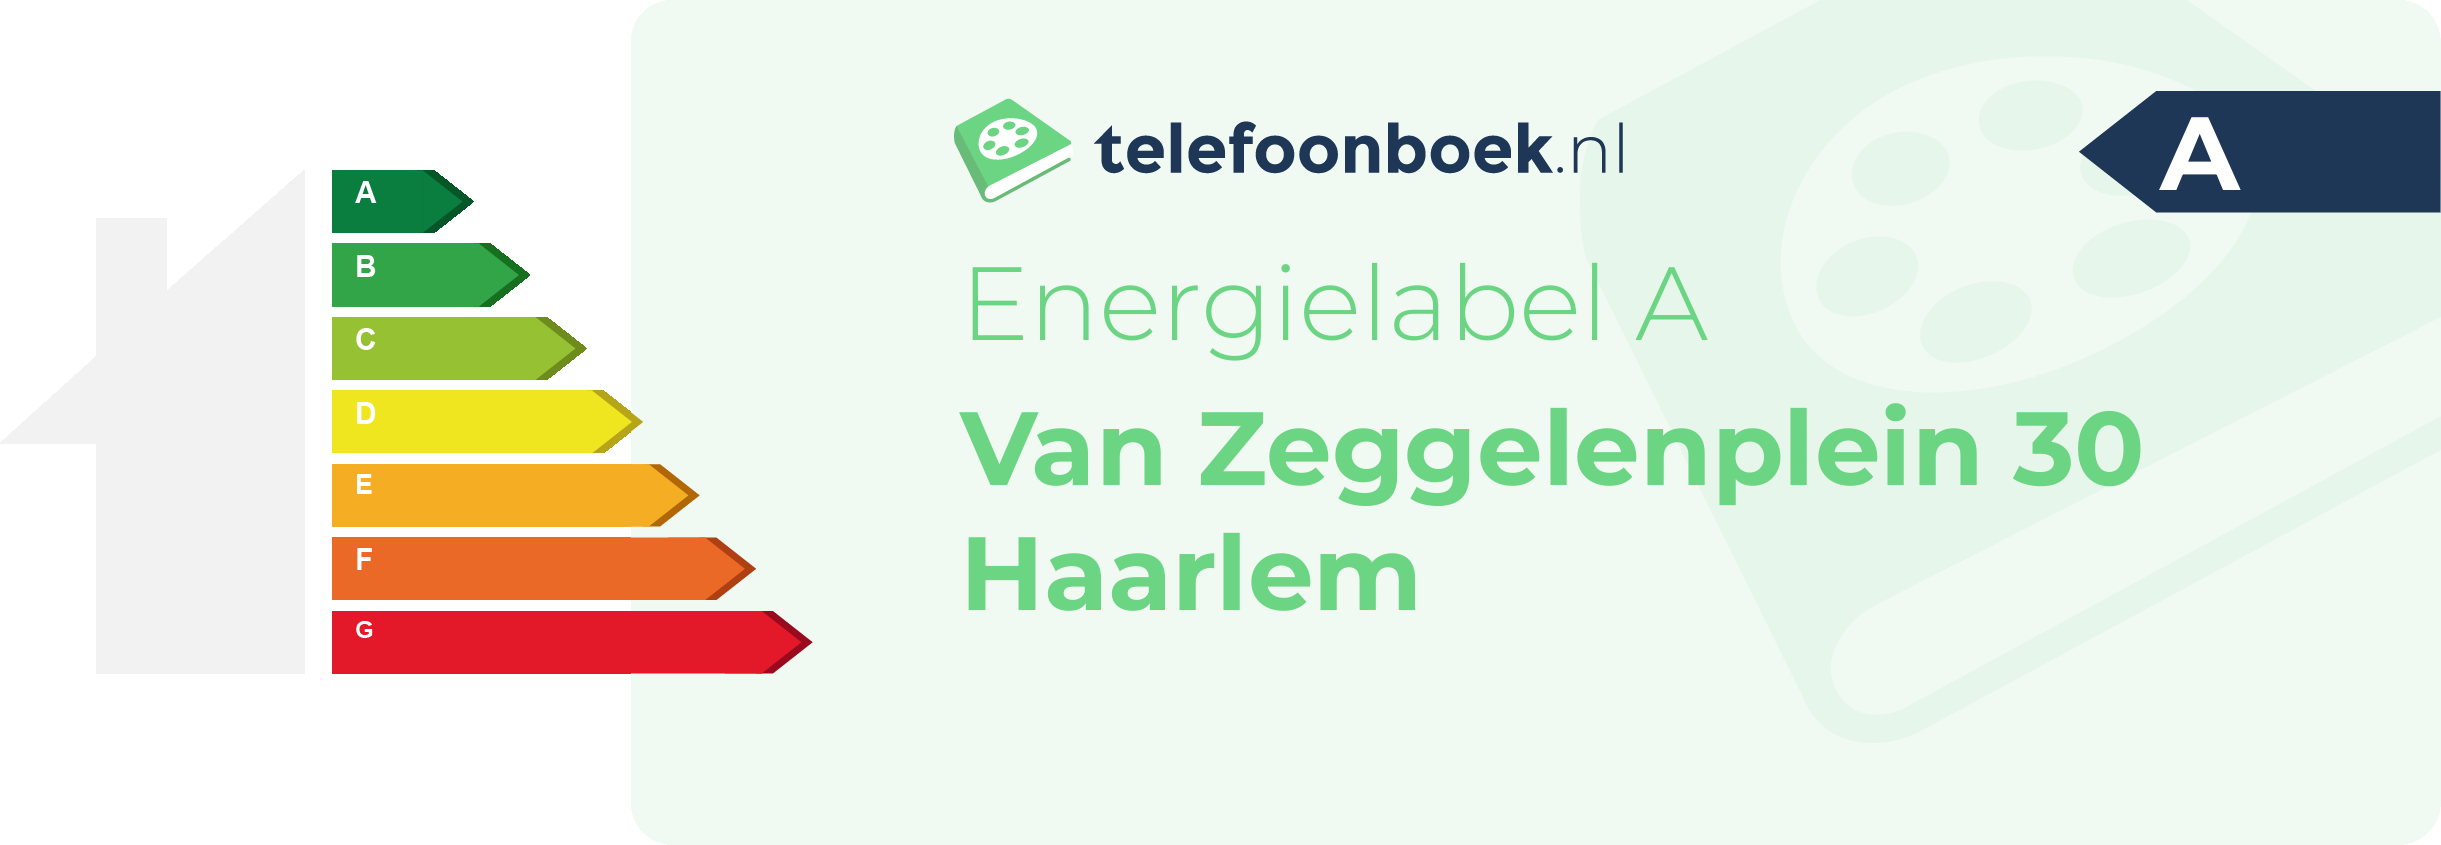 Energielabel Van Zeggelenplein 30 Haarlem